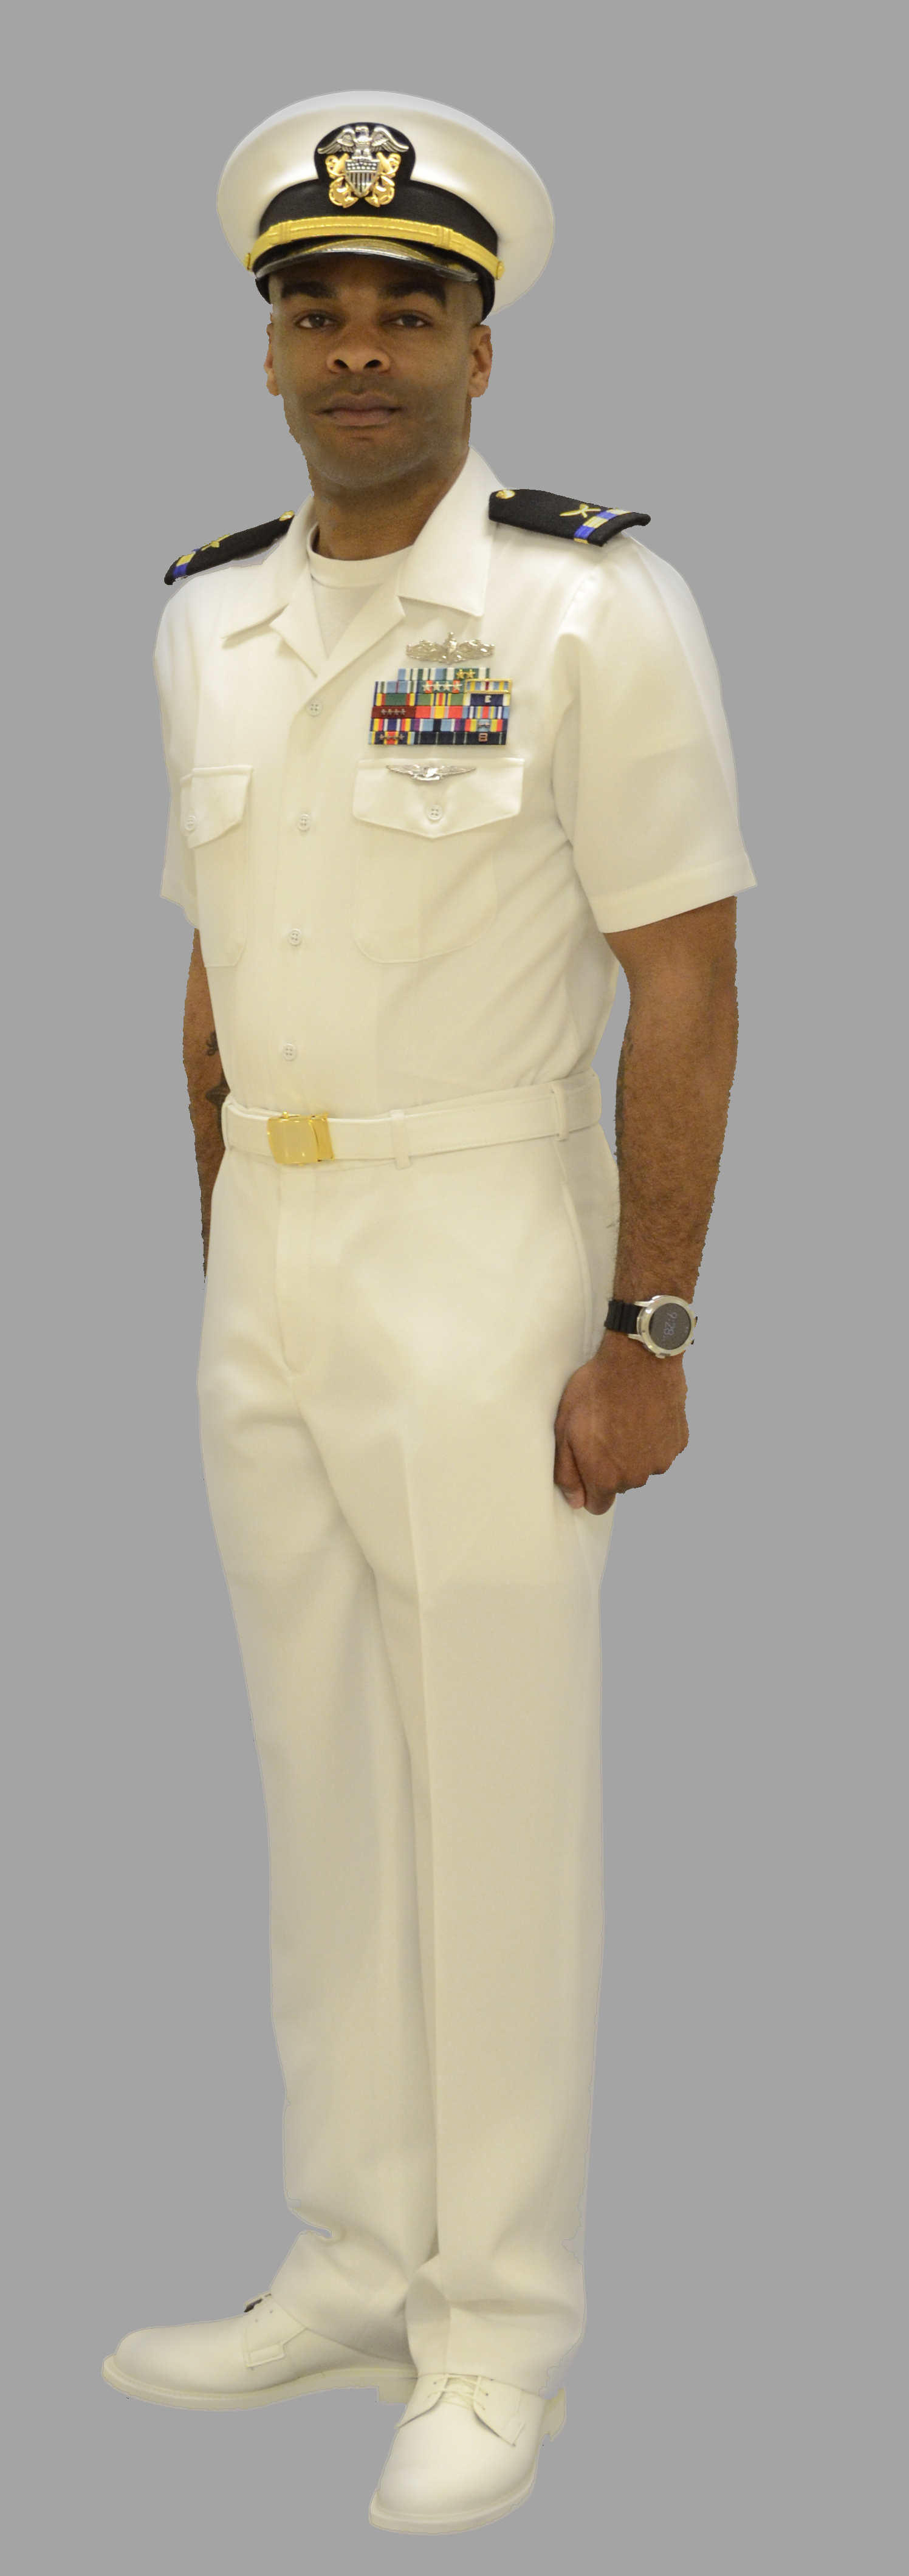 Male Officer Summer White